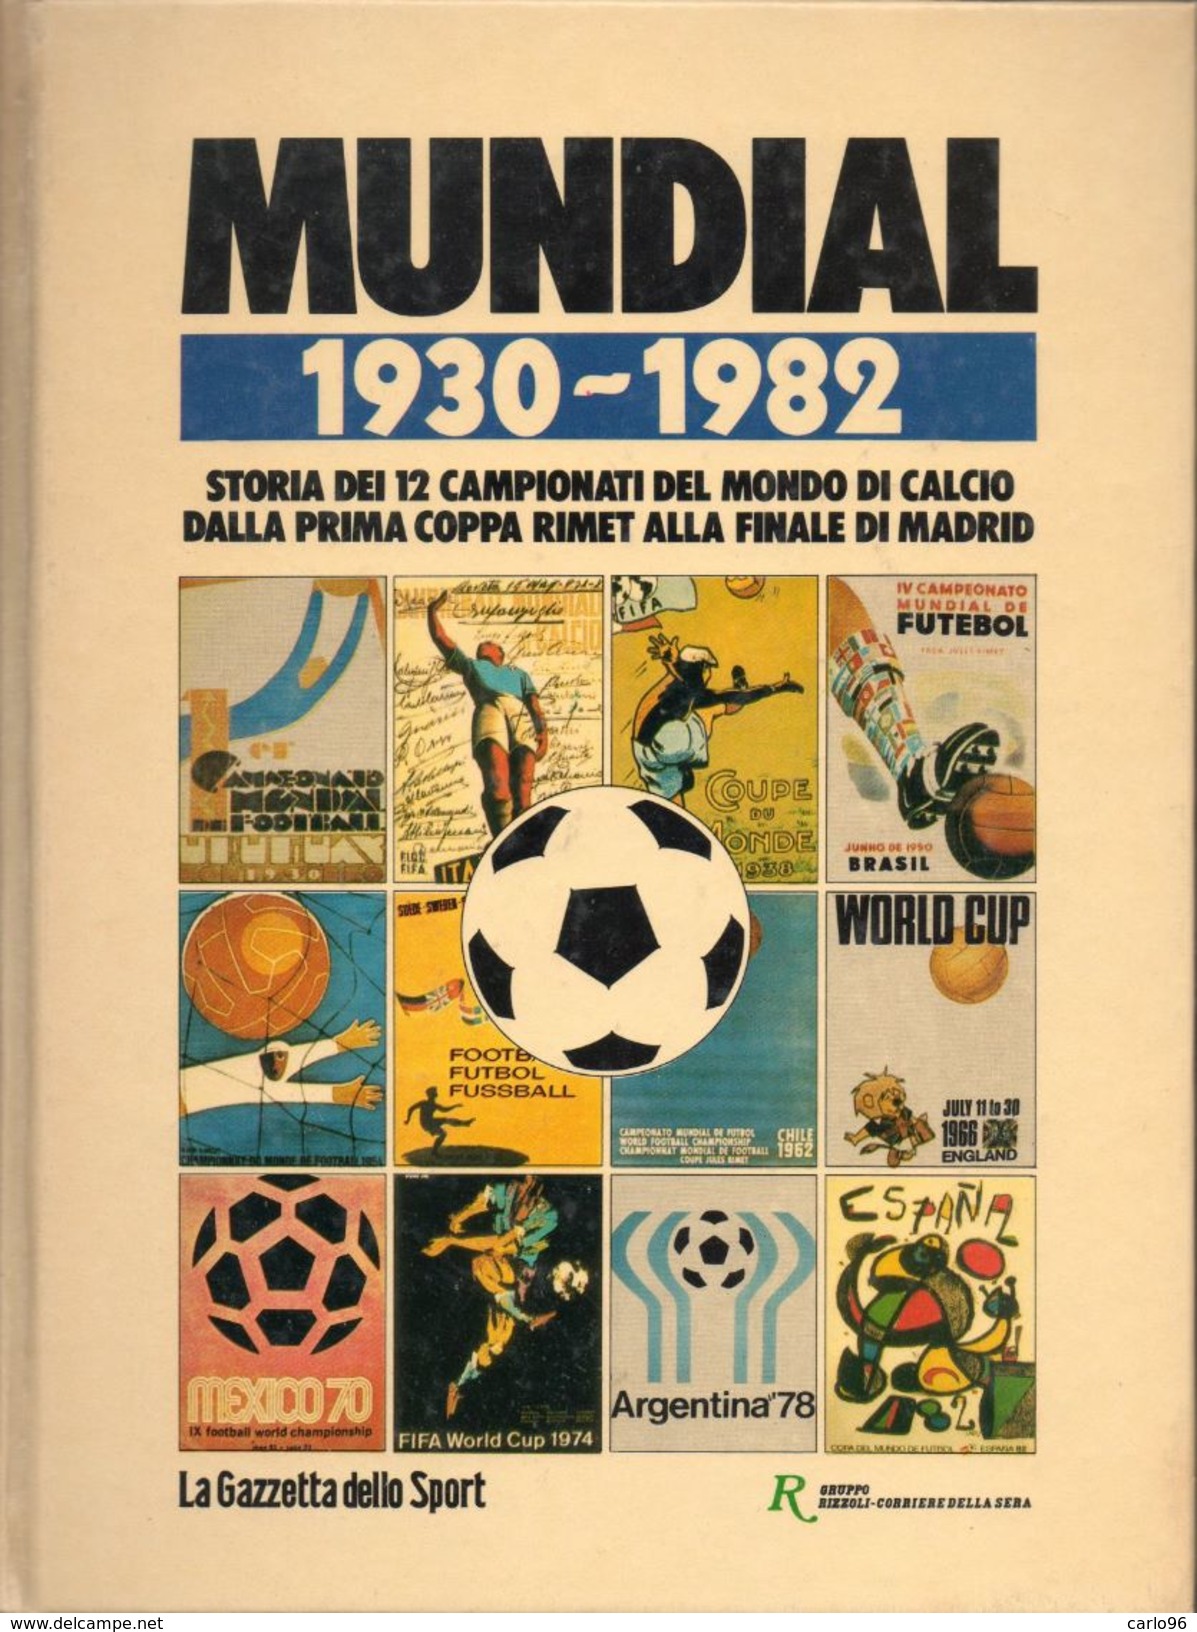 1930 / 1982 MUNDIAL ITALIA NAZIONALE DI CALCIO BOLAFFI / SASSONE - Libri